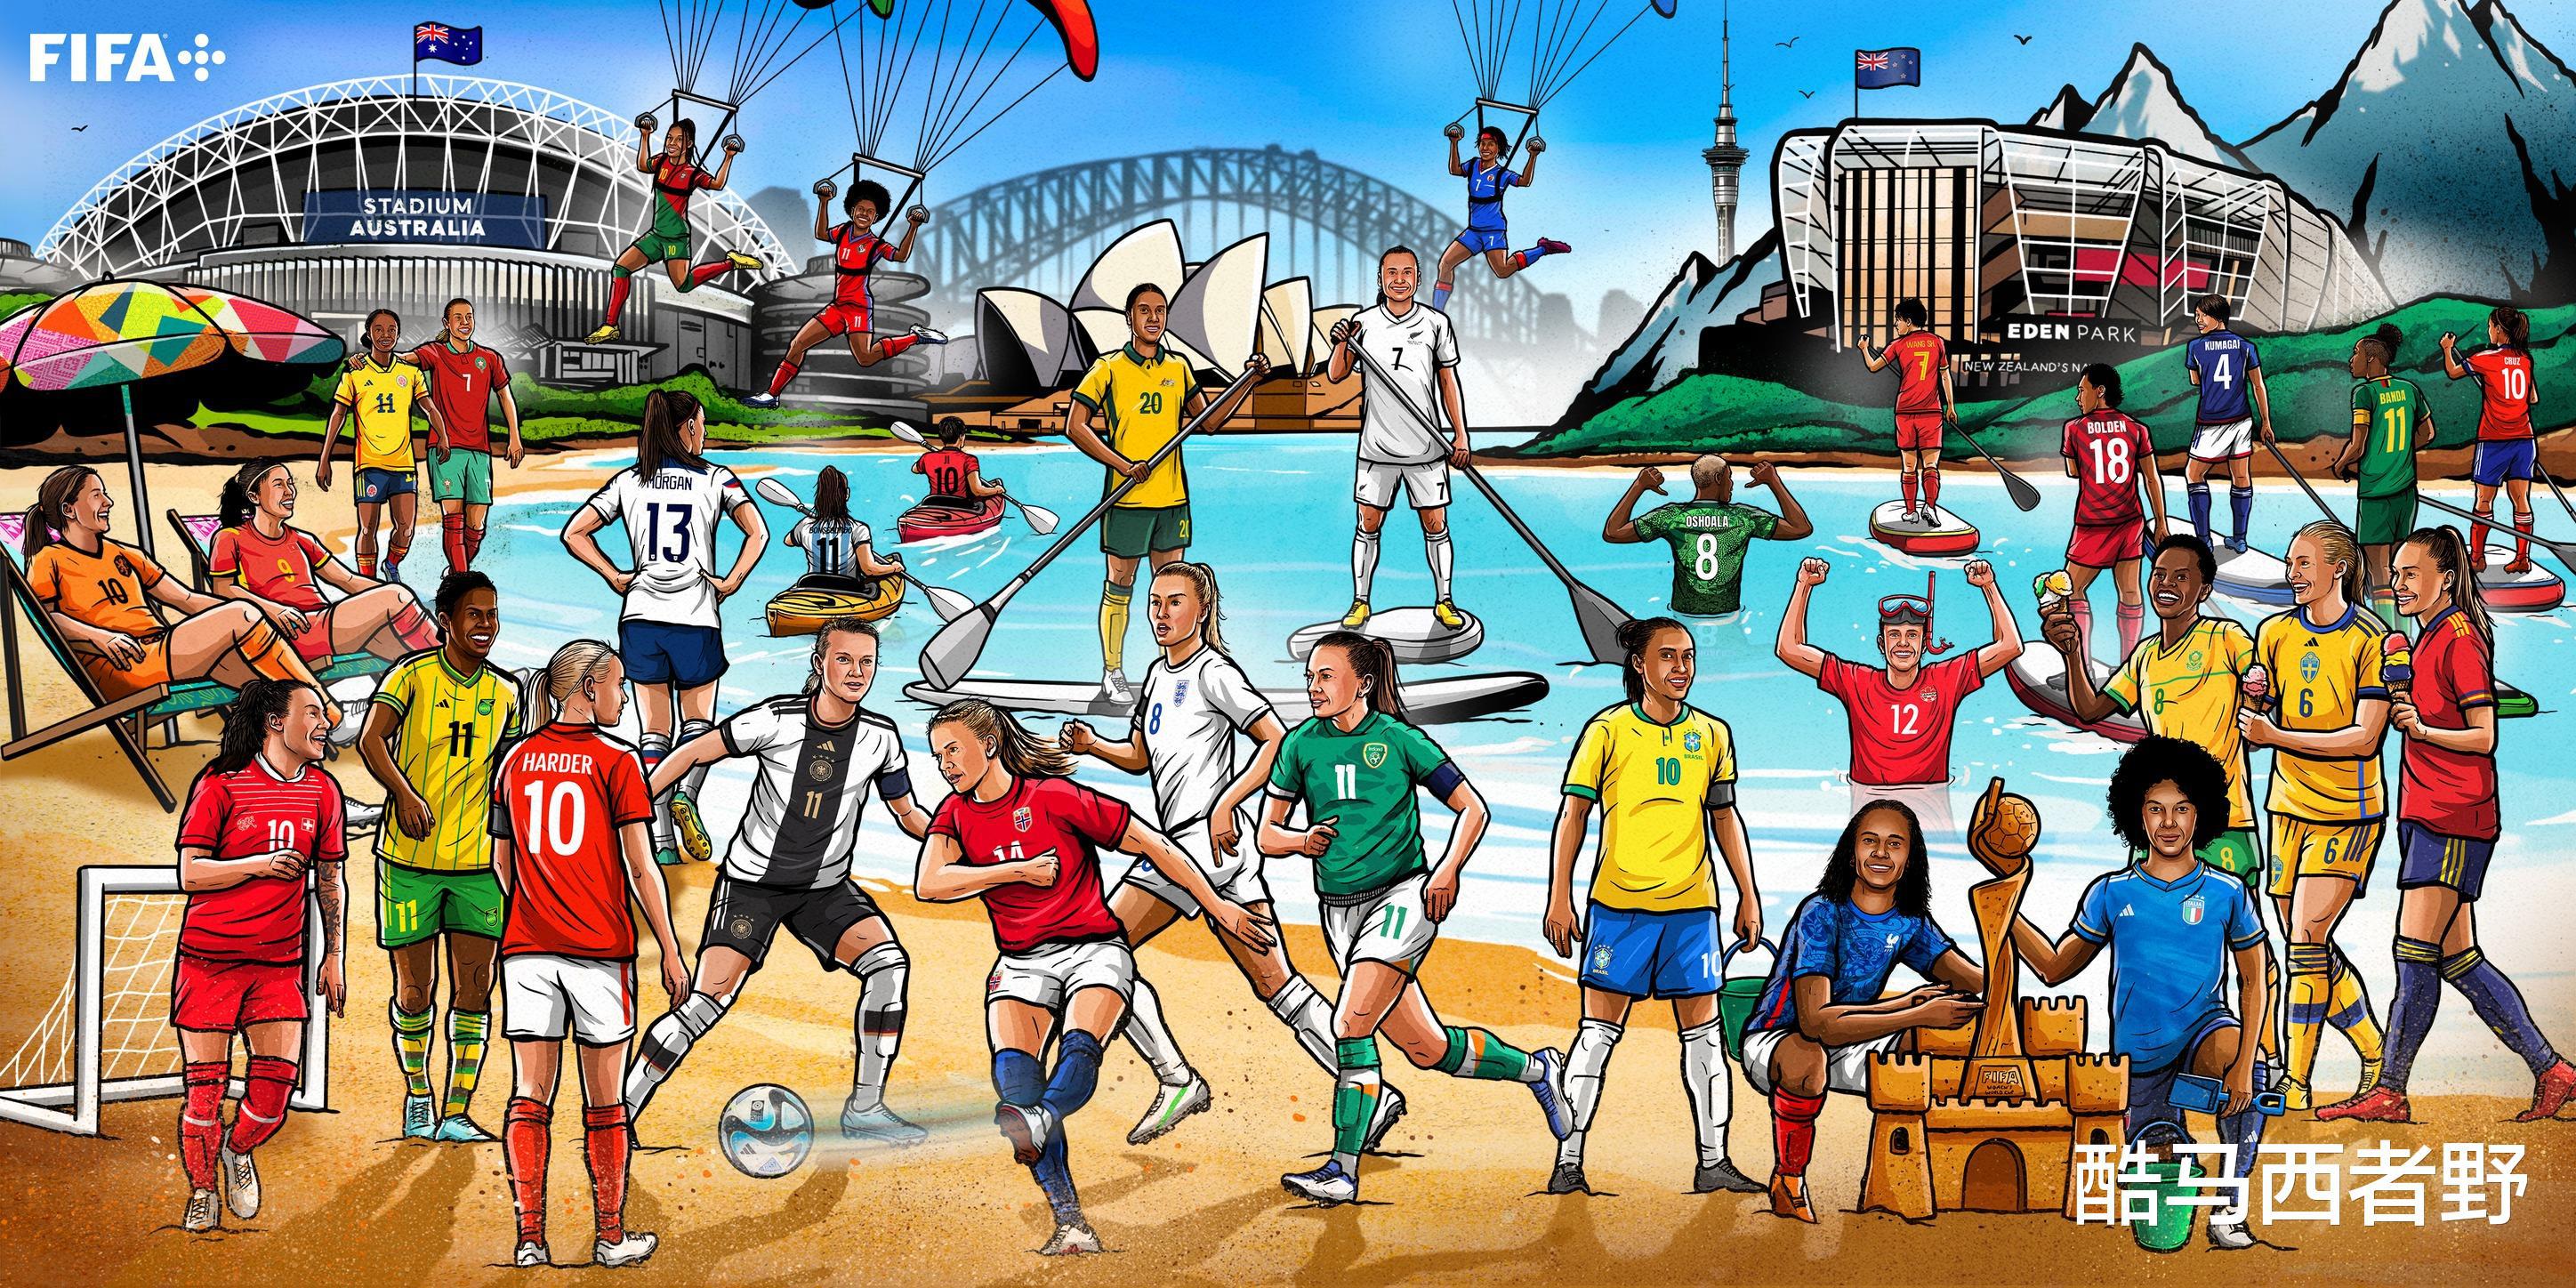 你能看懂吗？国际足联发布的女足世界杯参赛队画作(1)